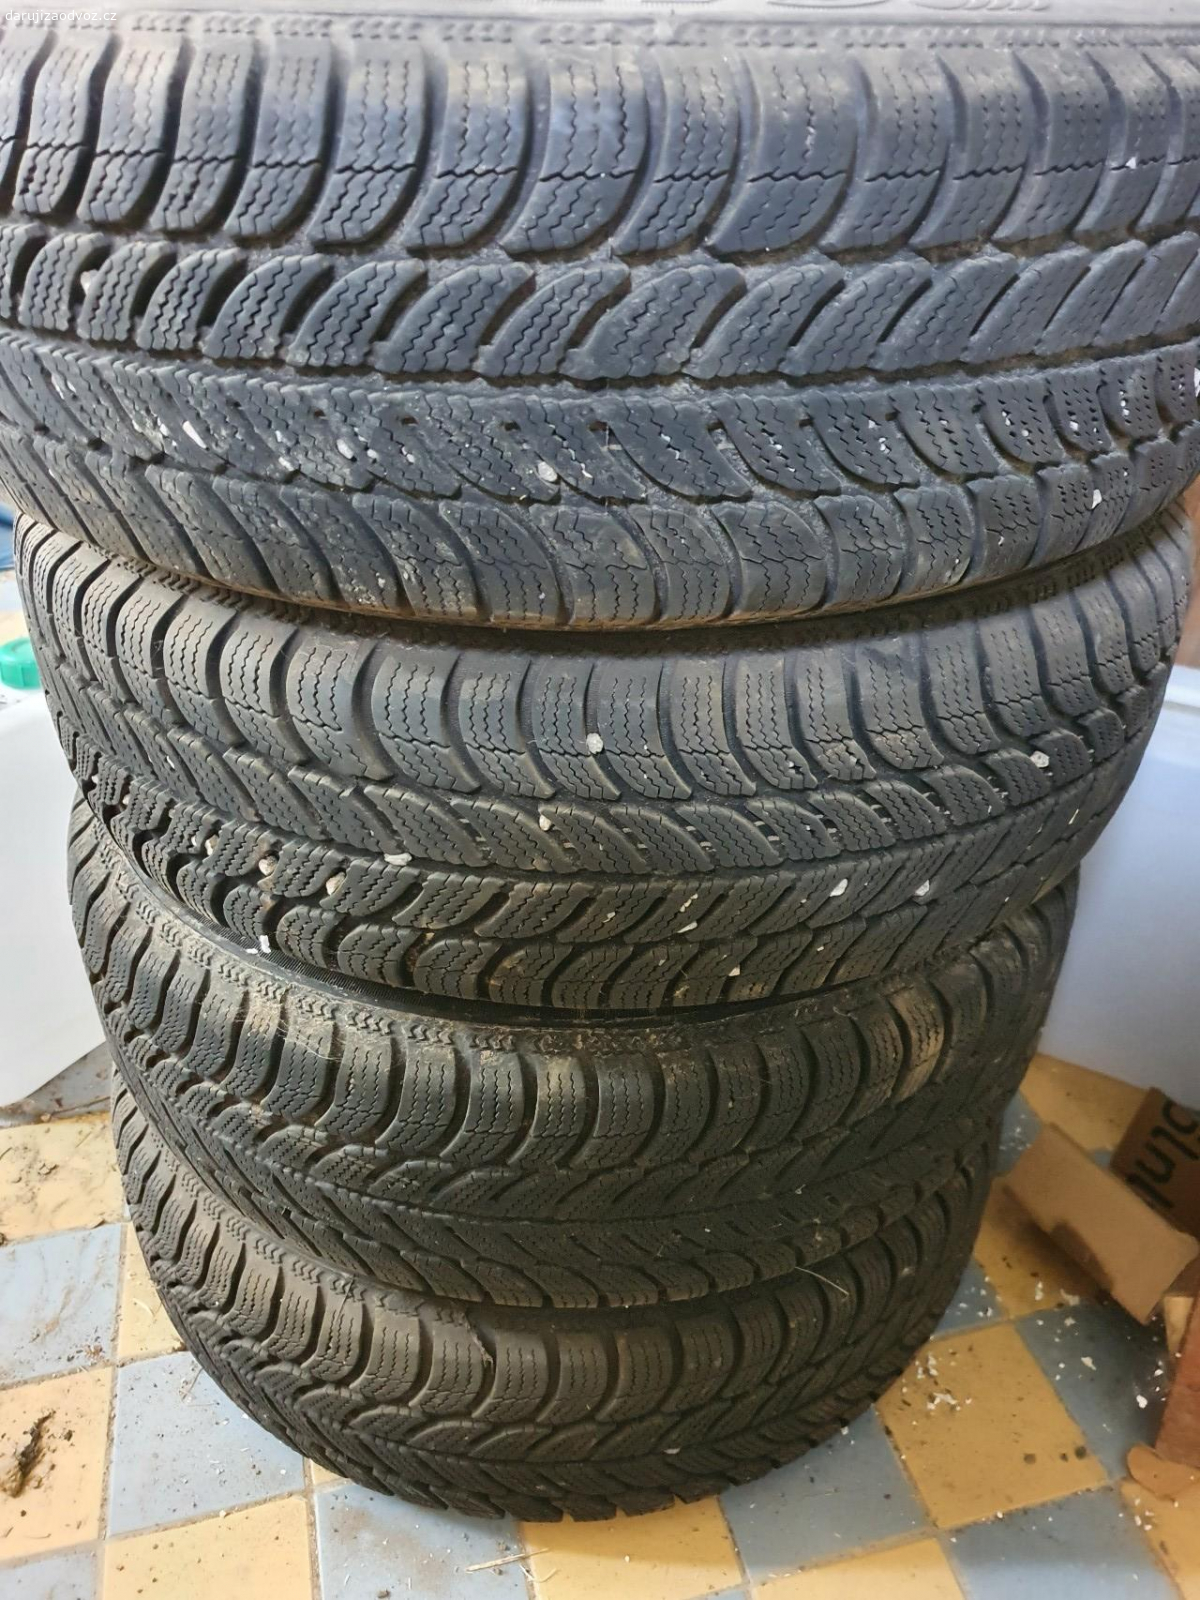 Zimní pneu. pár let staré leží ve sklepu, nepoužívané